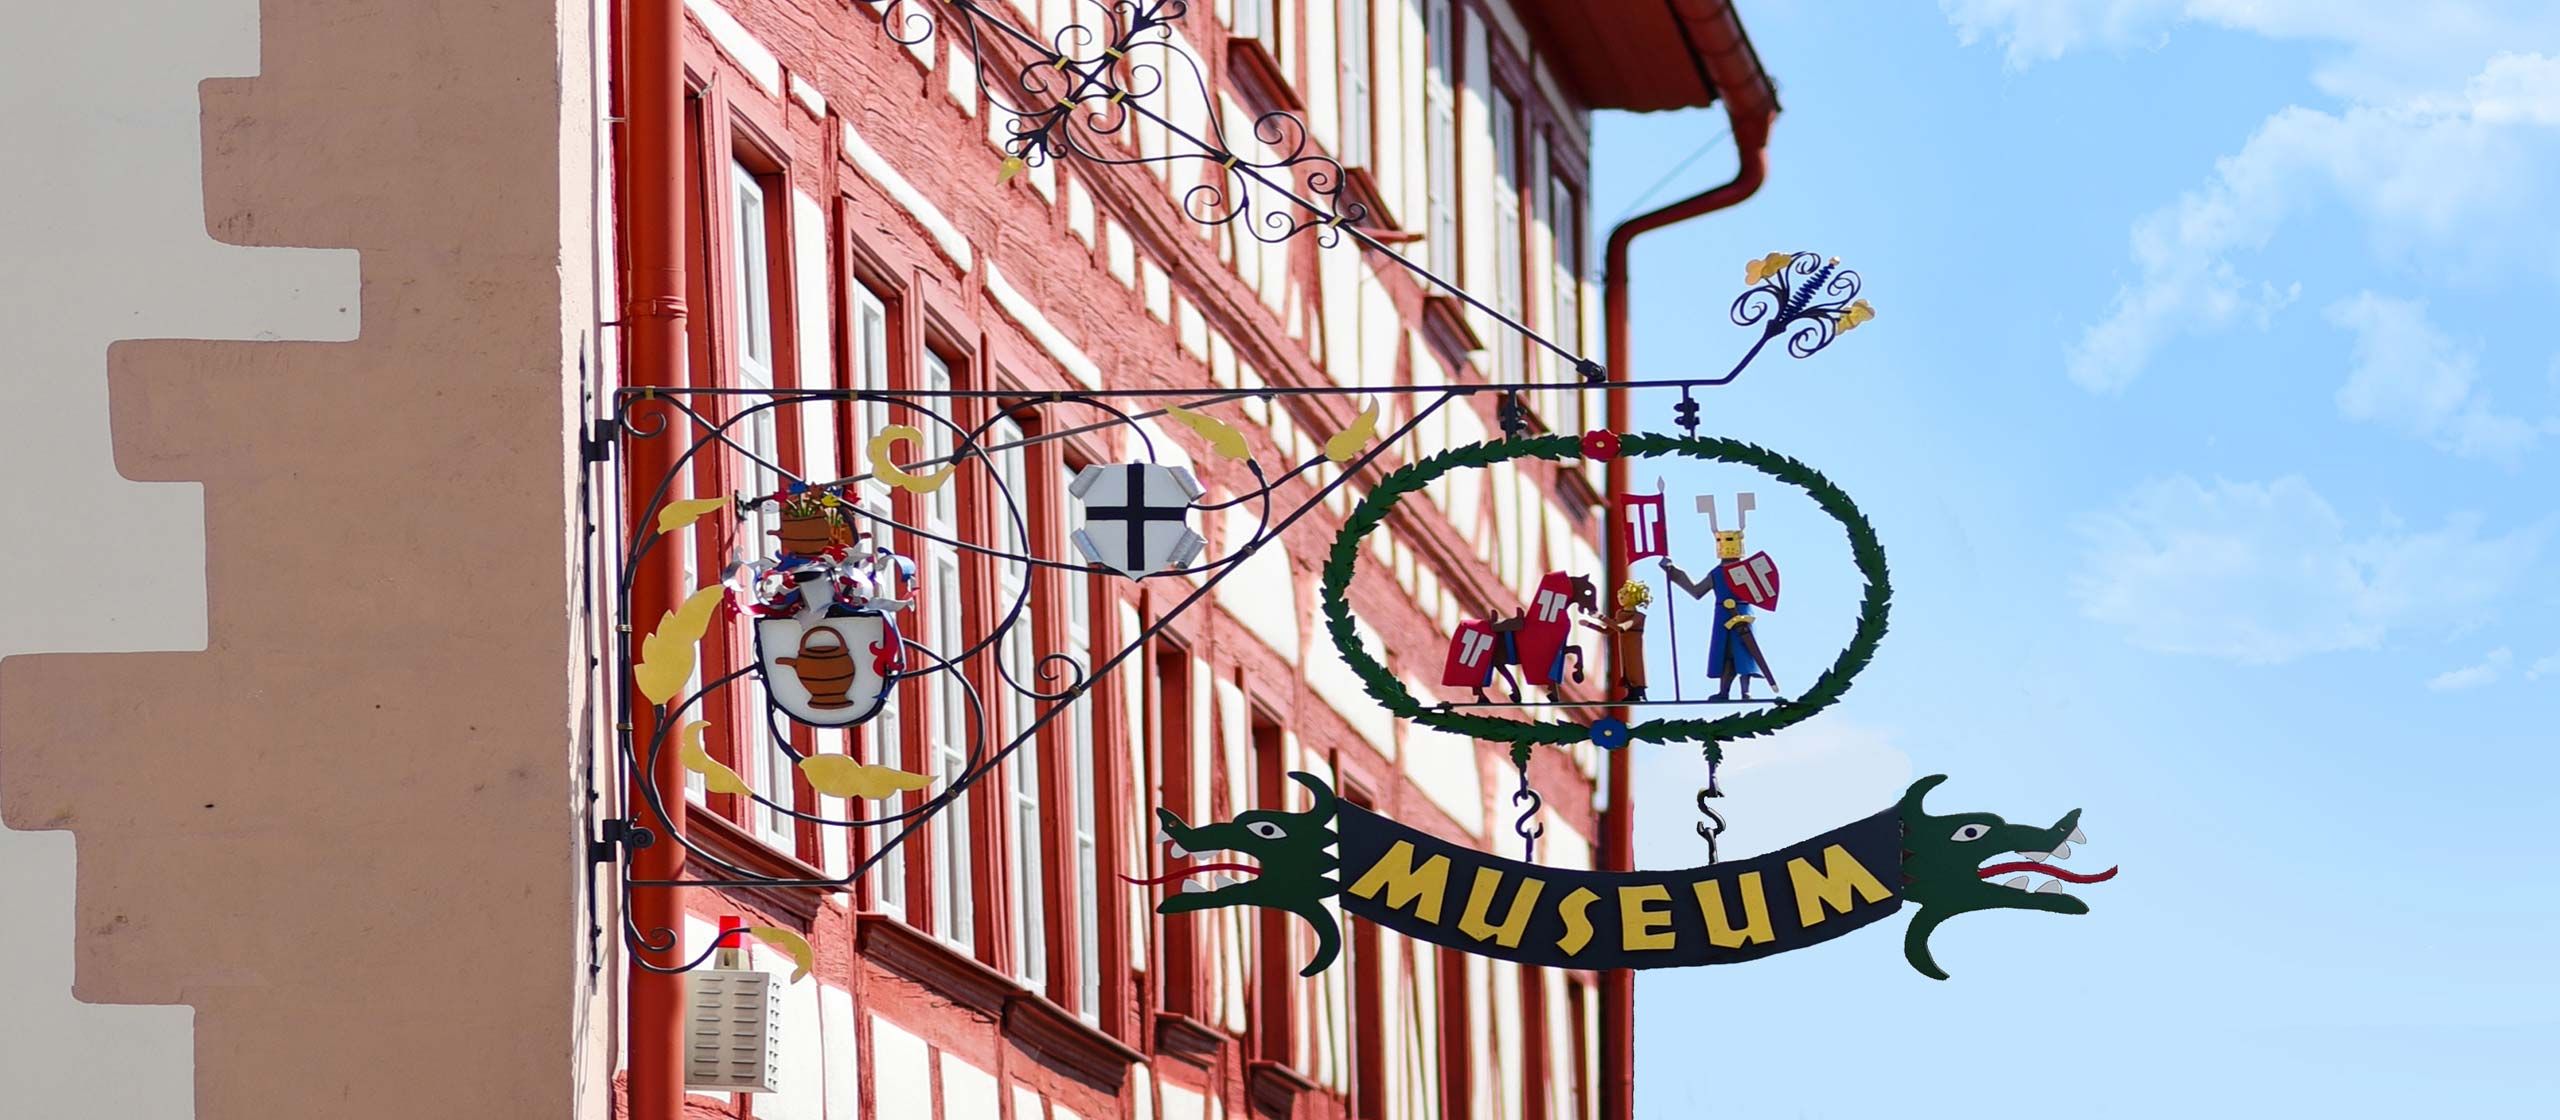 Museen - Freitzeit in der Altmühl-Mönchswald-Region